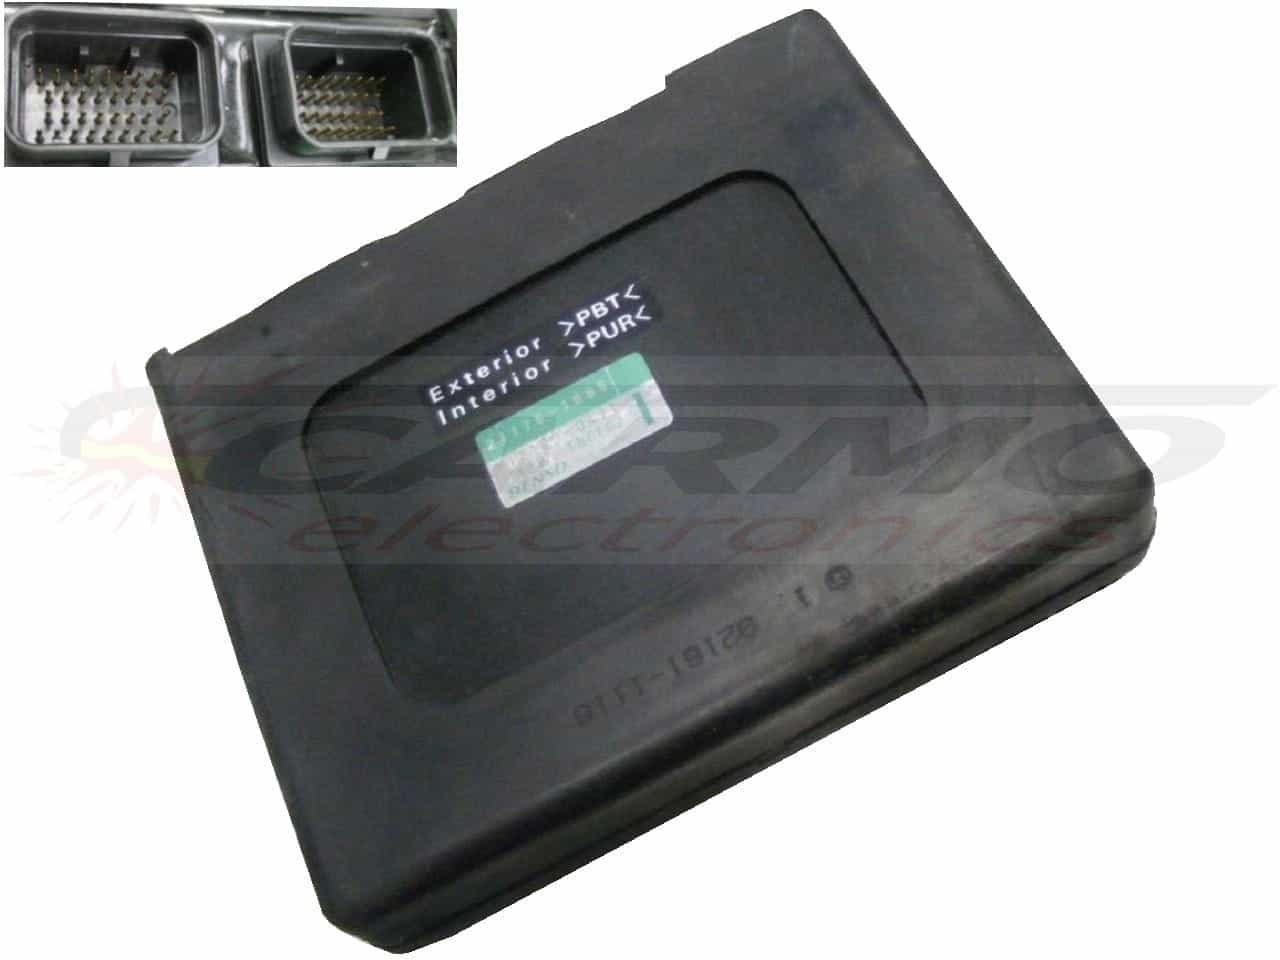 ZX12 1200 (21175-1065, 112100-0470) ECU CDI controller